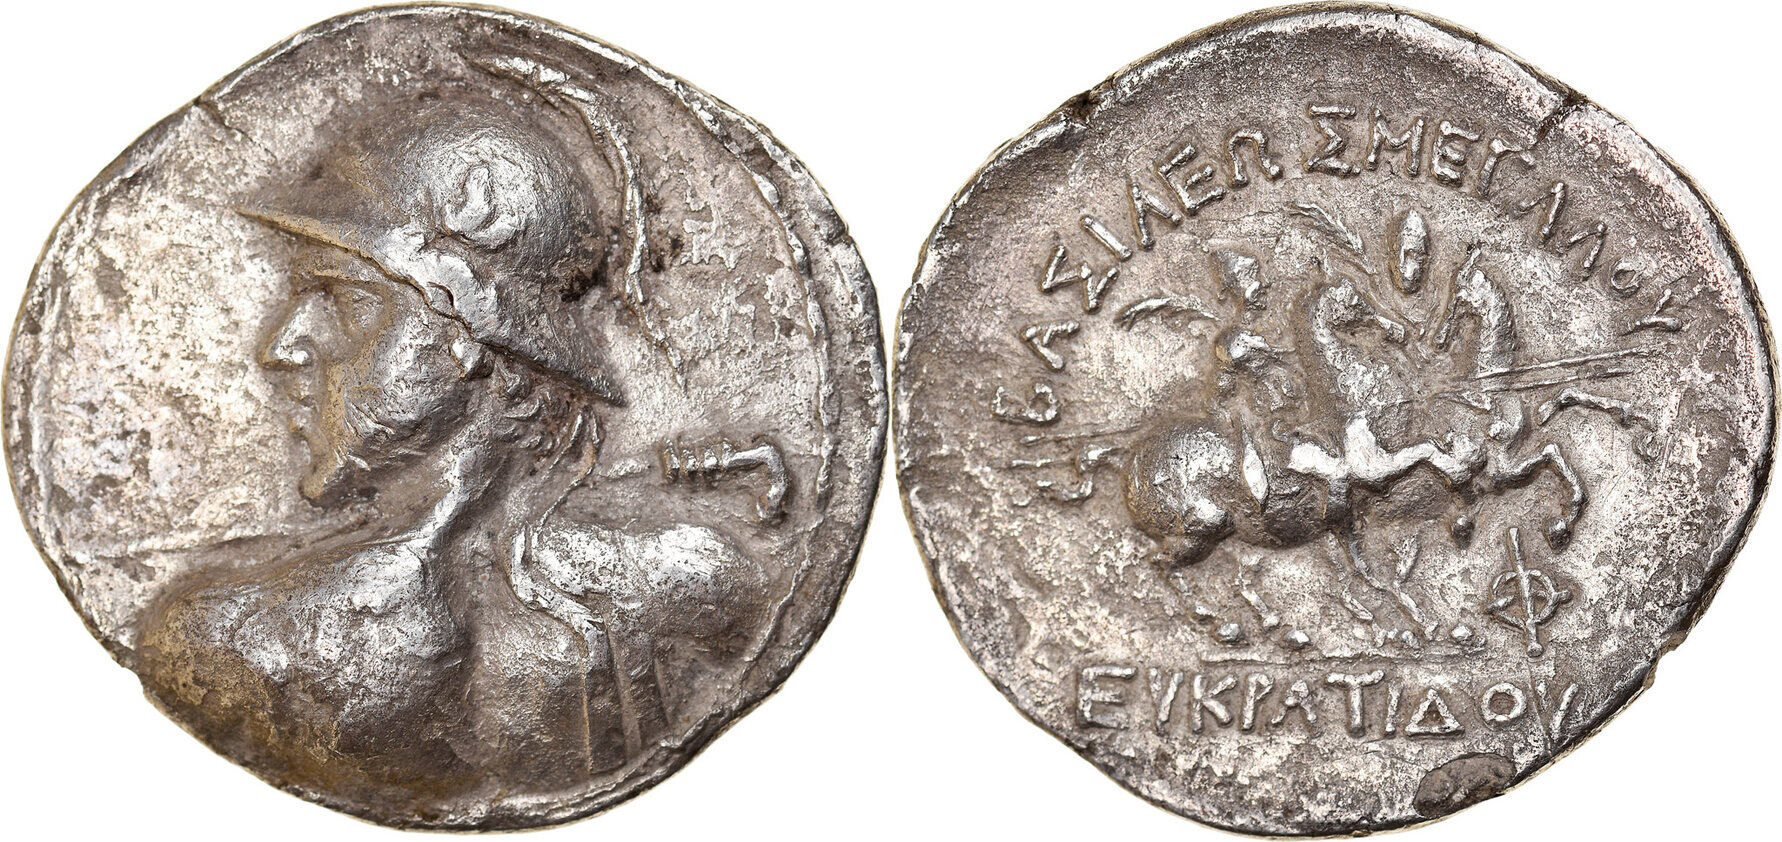 170 145 145 170 170. Монета Сицилия 1700. Монета Персии 1332 года. Королевство Мустанг монеты. Соверен монета 1900г.